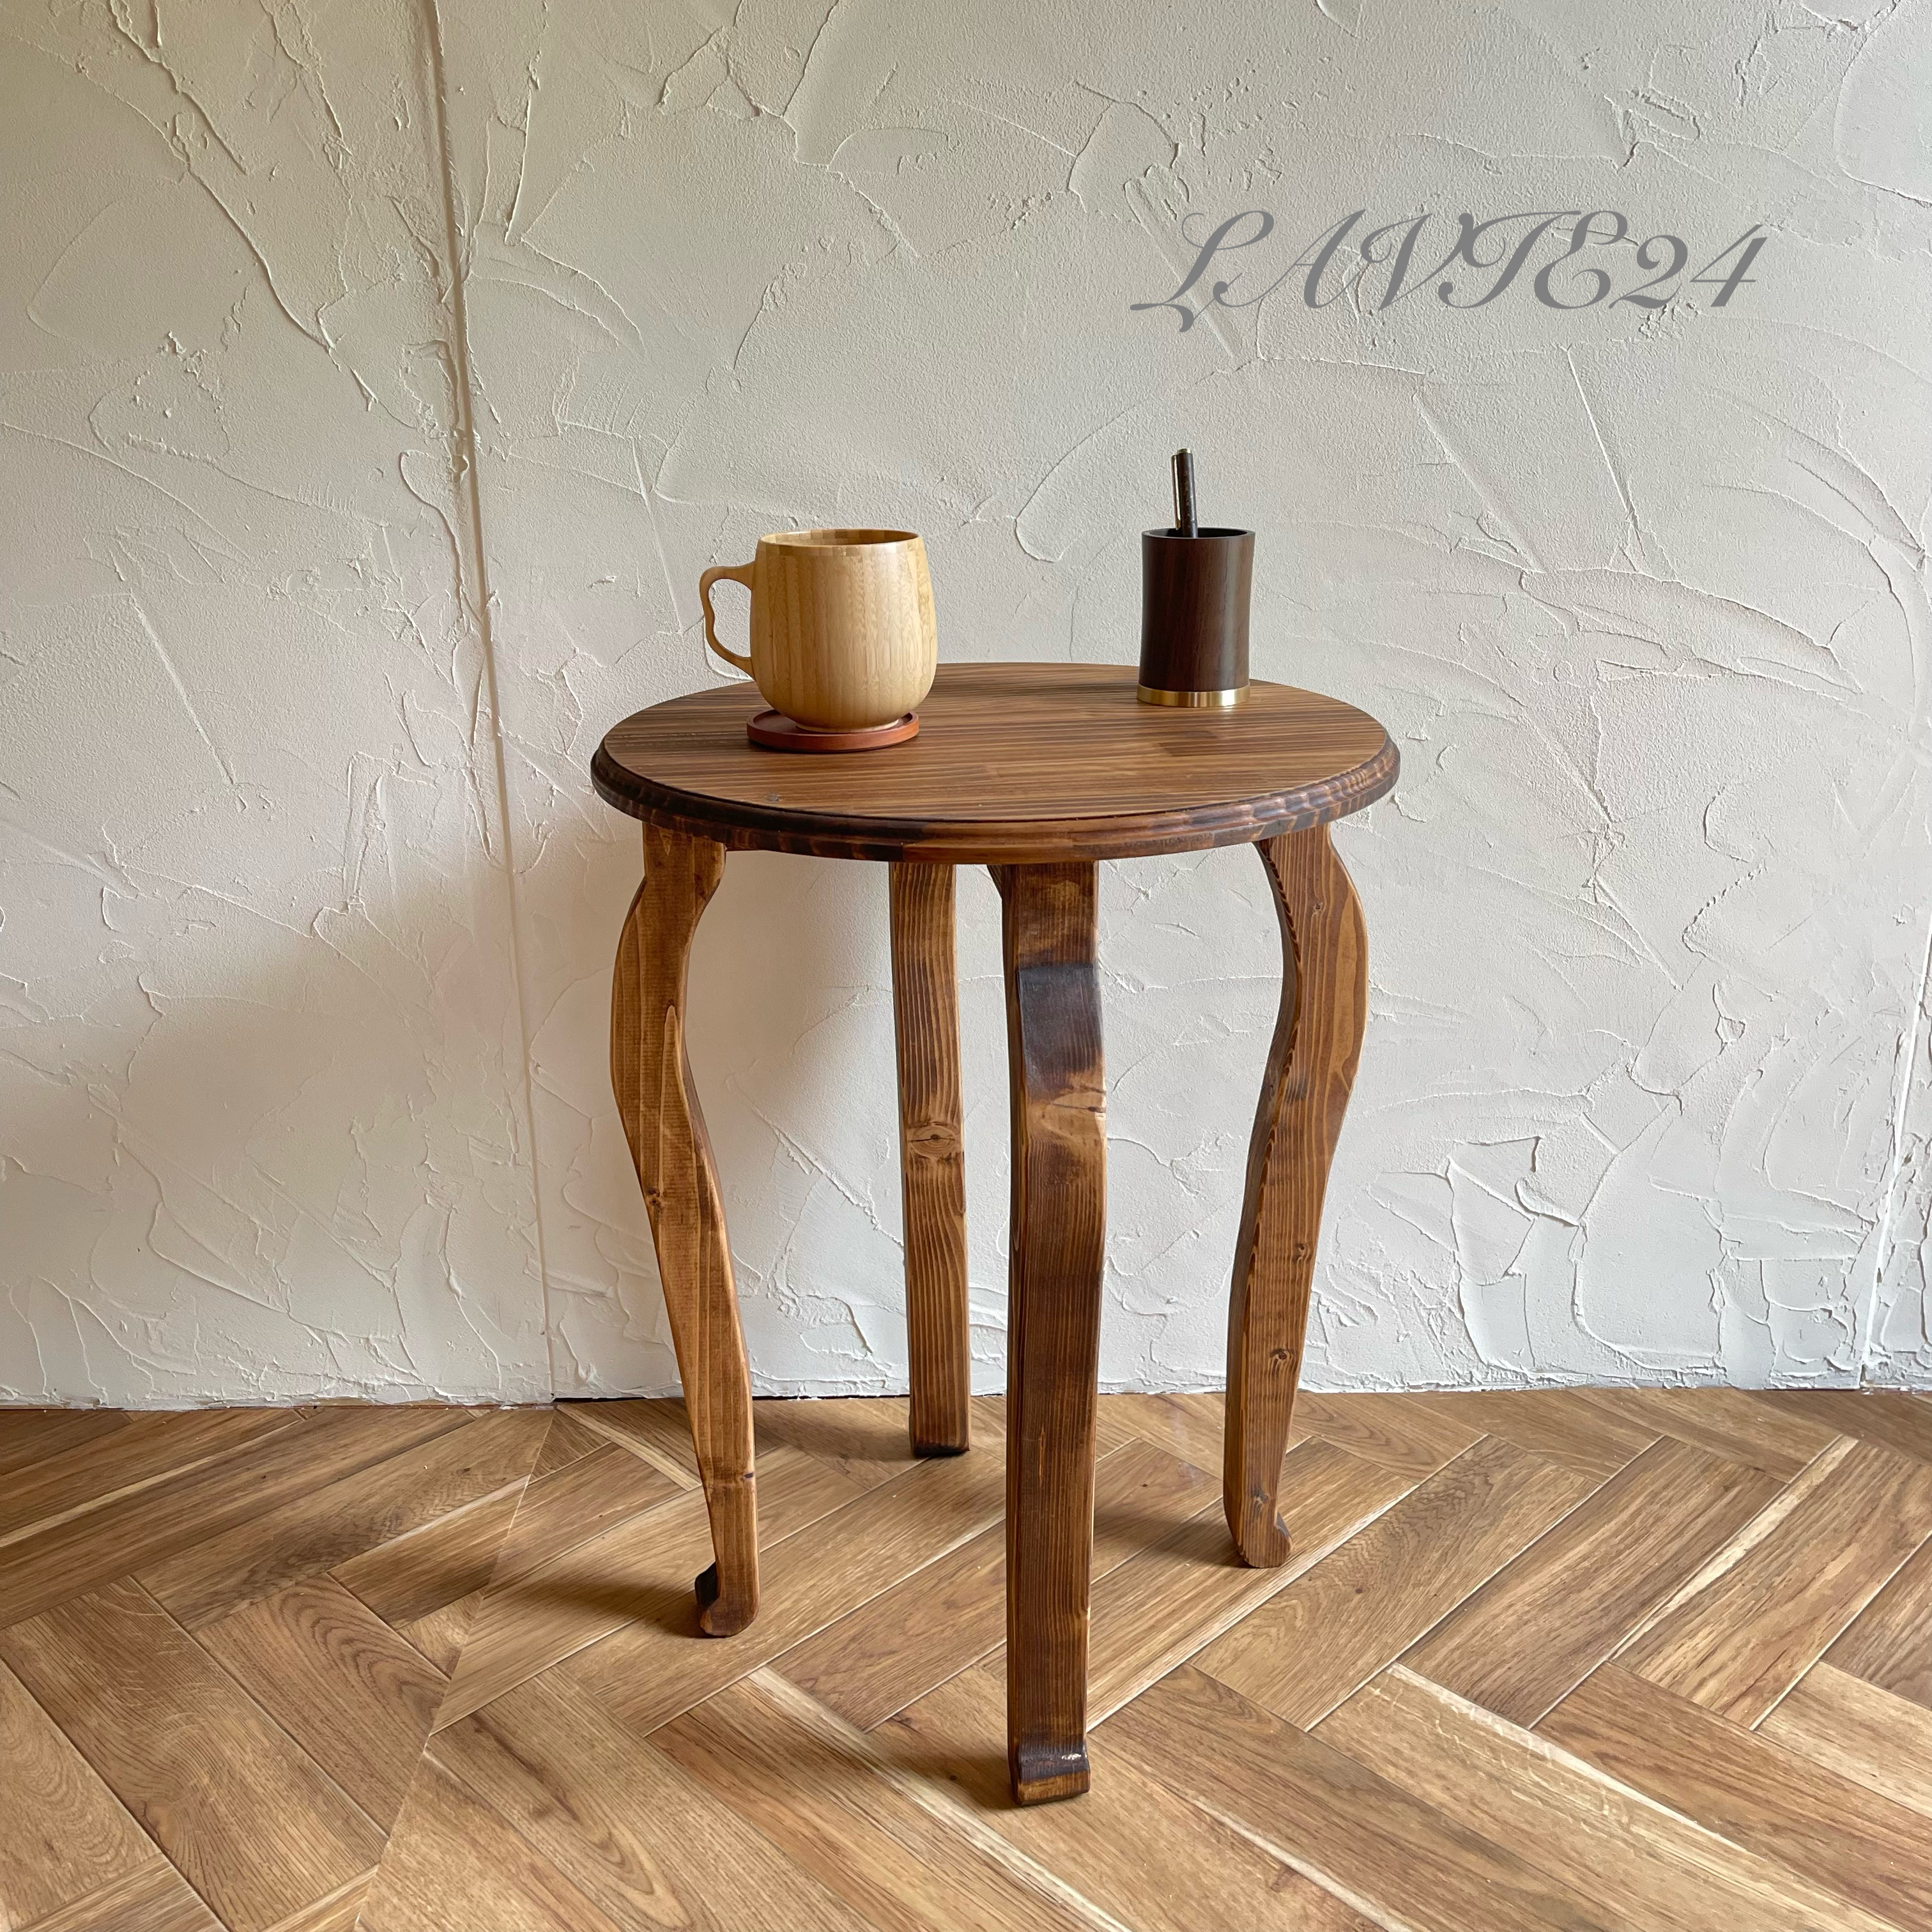 【サイズ変更 可】英国 デザイン ハイスツール /椅子 サイドテーブル